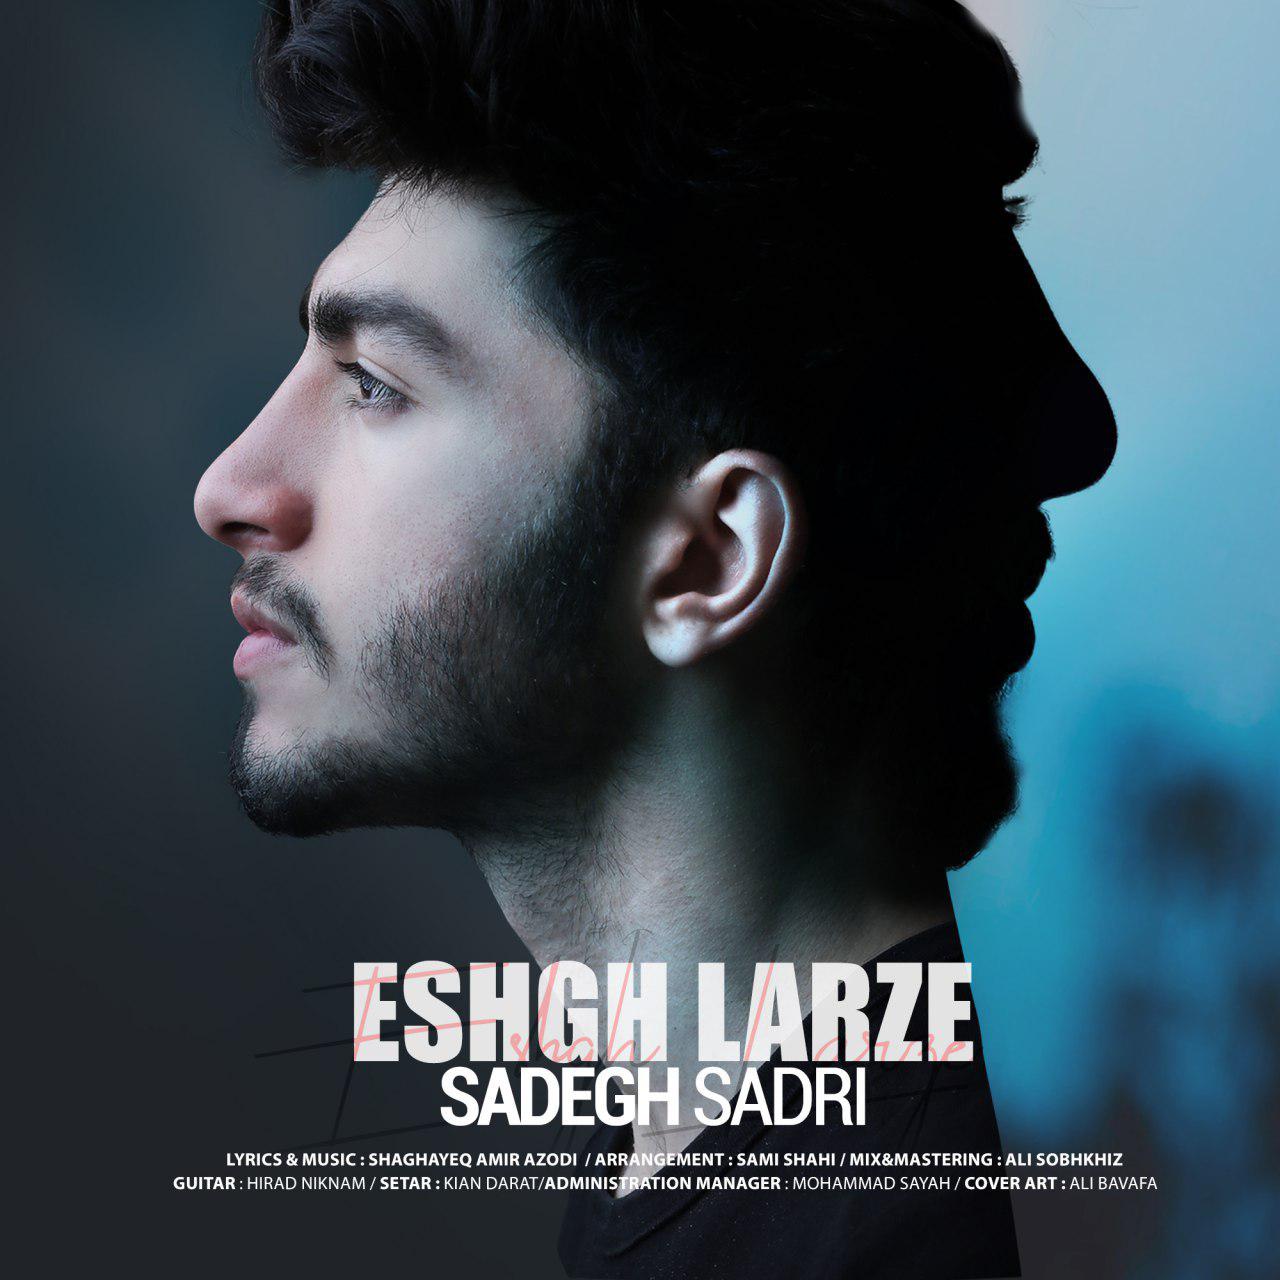  دانلود آهنگ جدید صادق صدری - عشق لرزه | Download New Music By Sadegh Sadri - Eshgh Larze